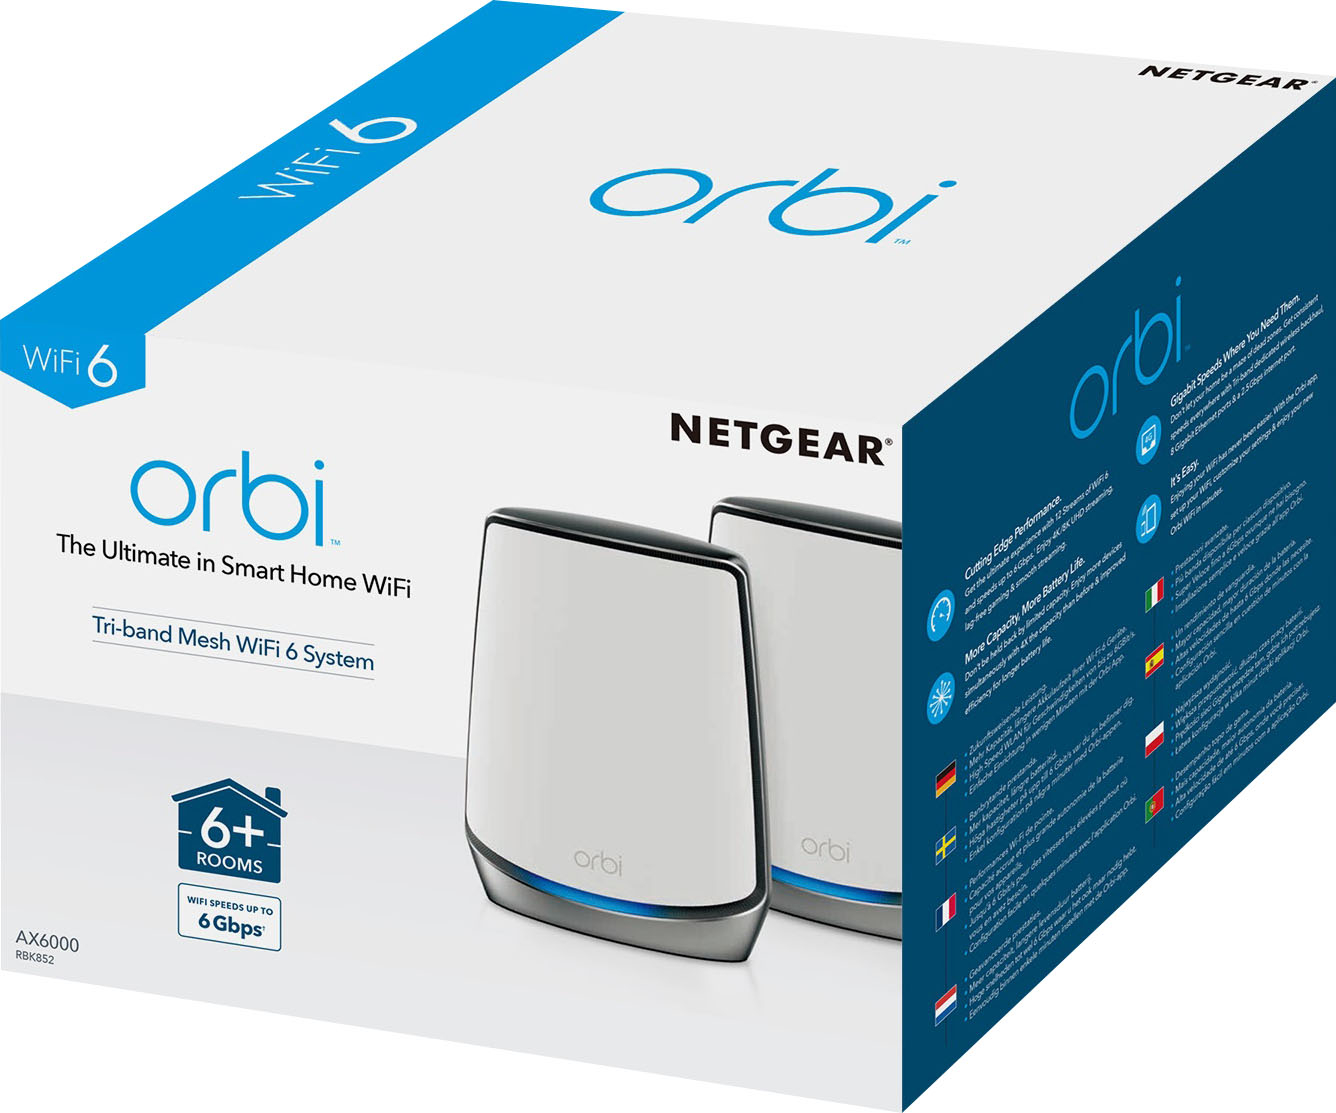 NETGEAR Orbi 960 Series AXE11000 Quad-Band Mesh Wi-Fi 6E System (2-pack)  White RBKE962-100NAS - Best Buy